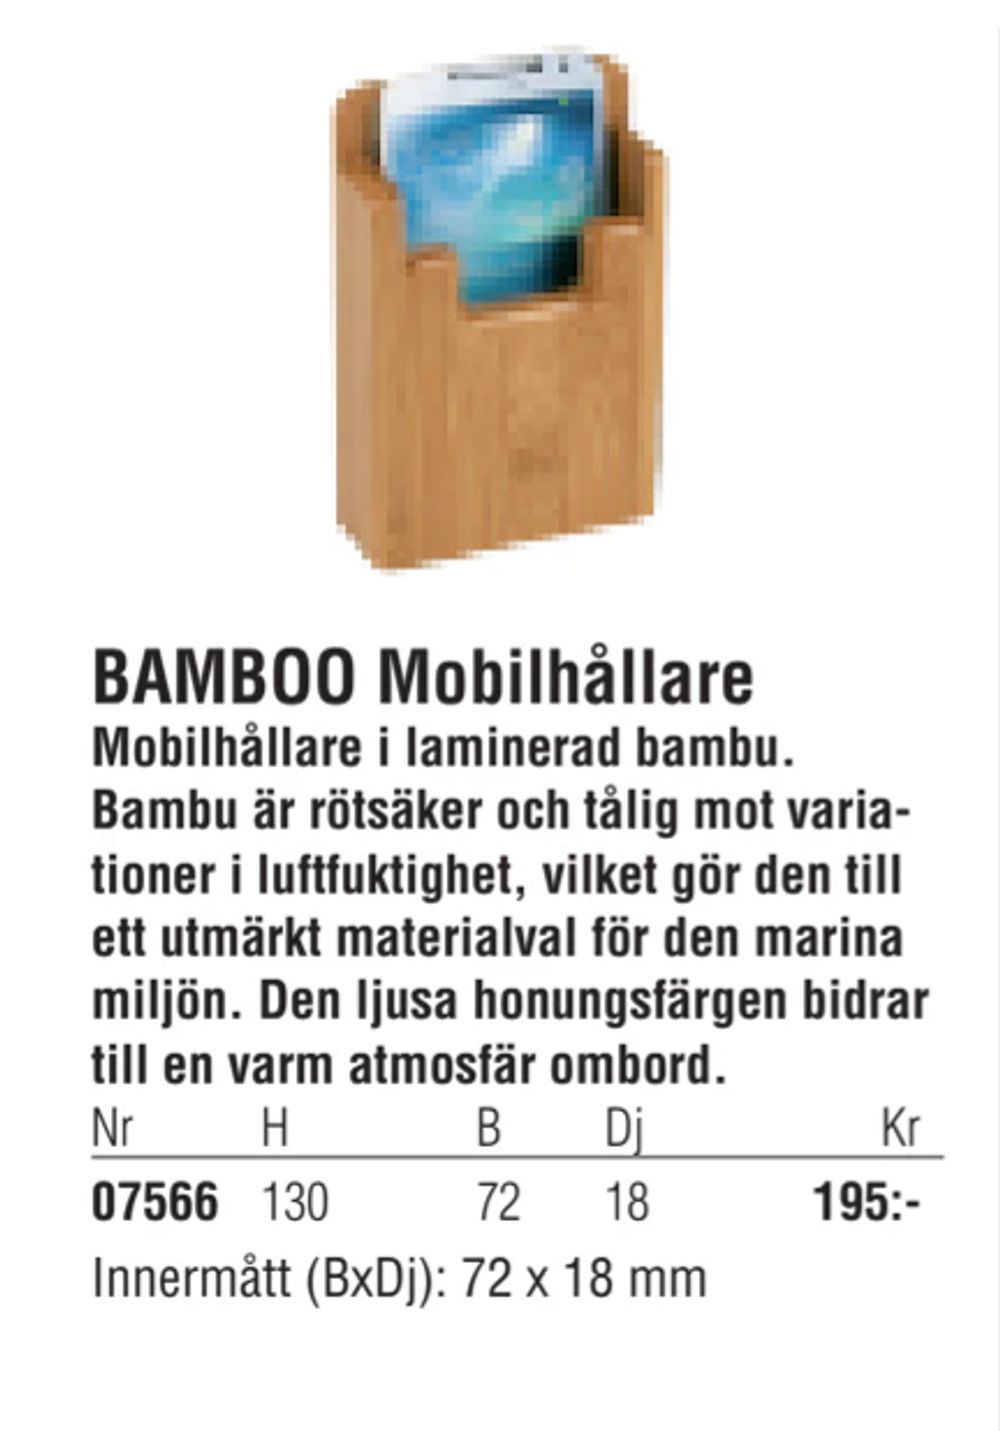 Erbjudanden på BAMBOO Mobilhållare från Erlandsons Brygga för 195 kr